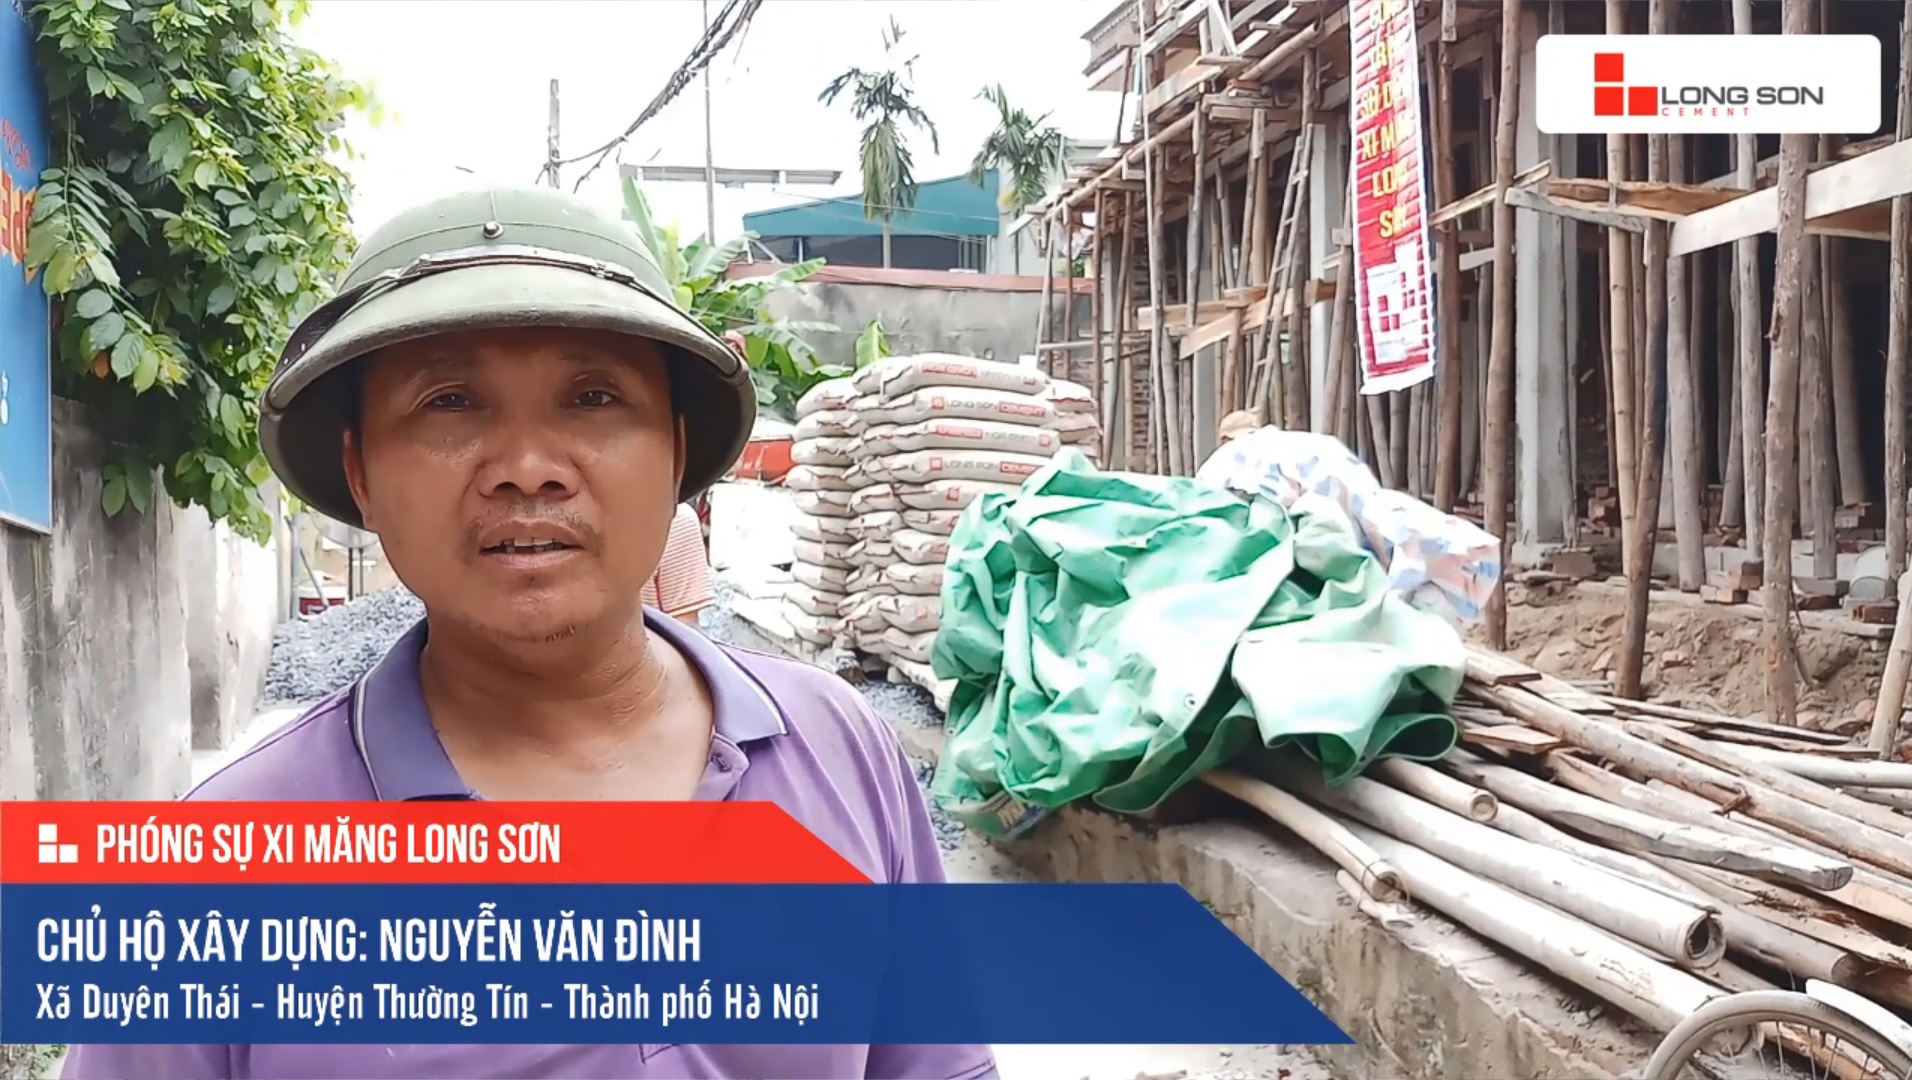 Phóng sự công trình sử dụng Xi măng Long Sơn tại Hà Nội 26.04.2019